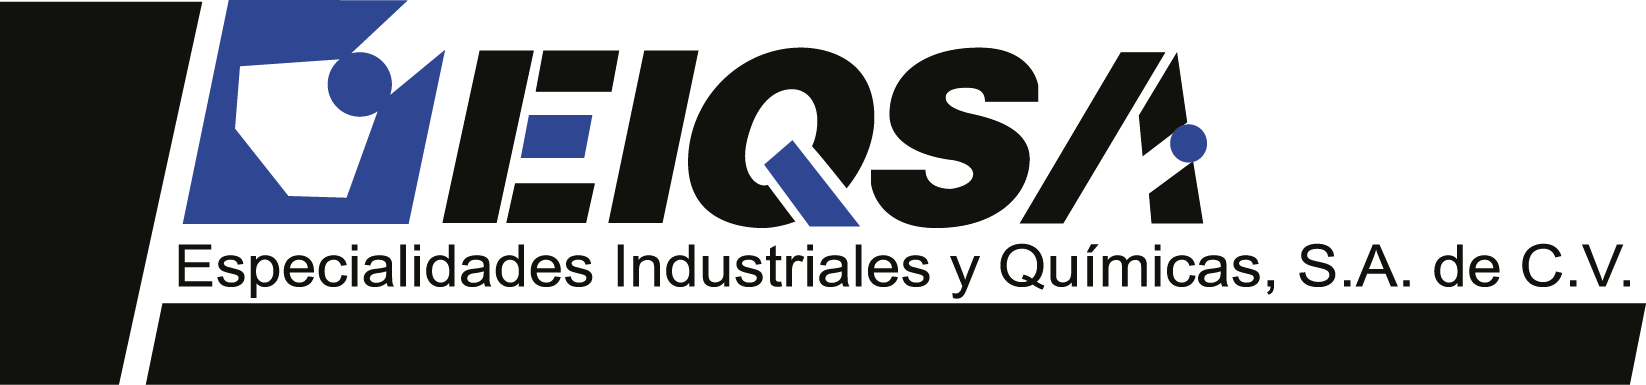 EIQSA - Especialidades Industriales y Químicas SA de CV